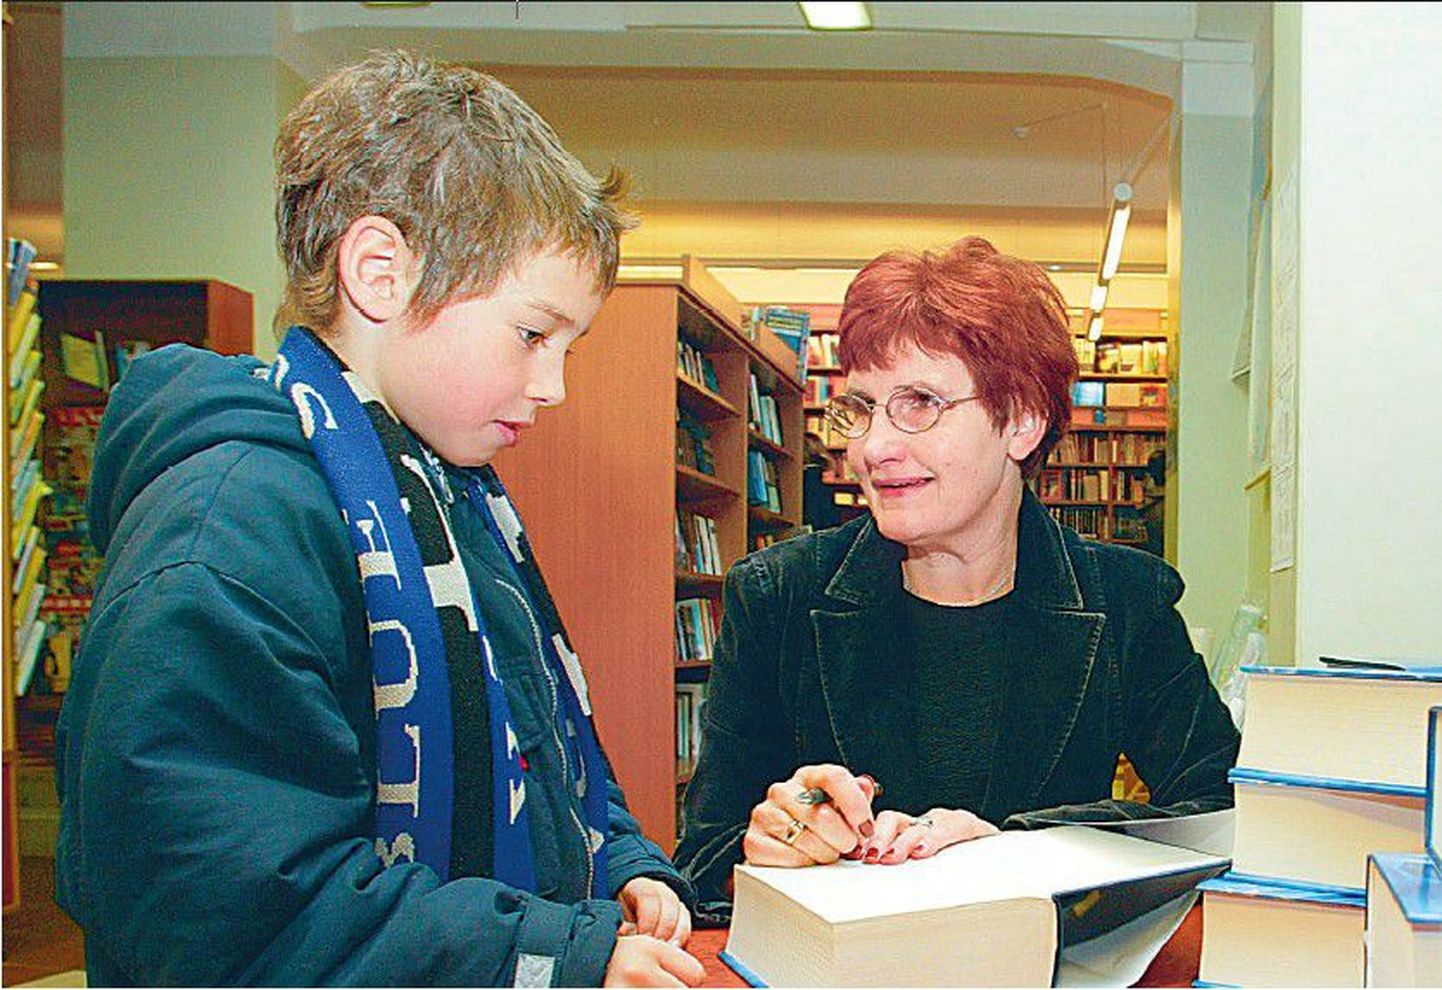 Kohtumine fänniga: aasta 2003, viies Potter, Apollo raamatupood. Tõlkija Krista Kaer signeerib toona 8-aastase Oskari raamatut.